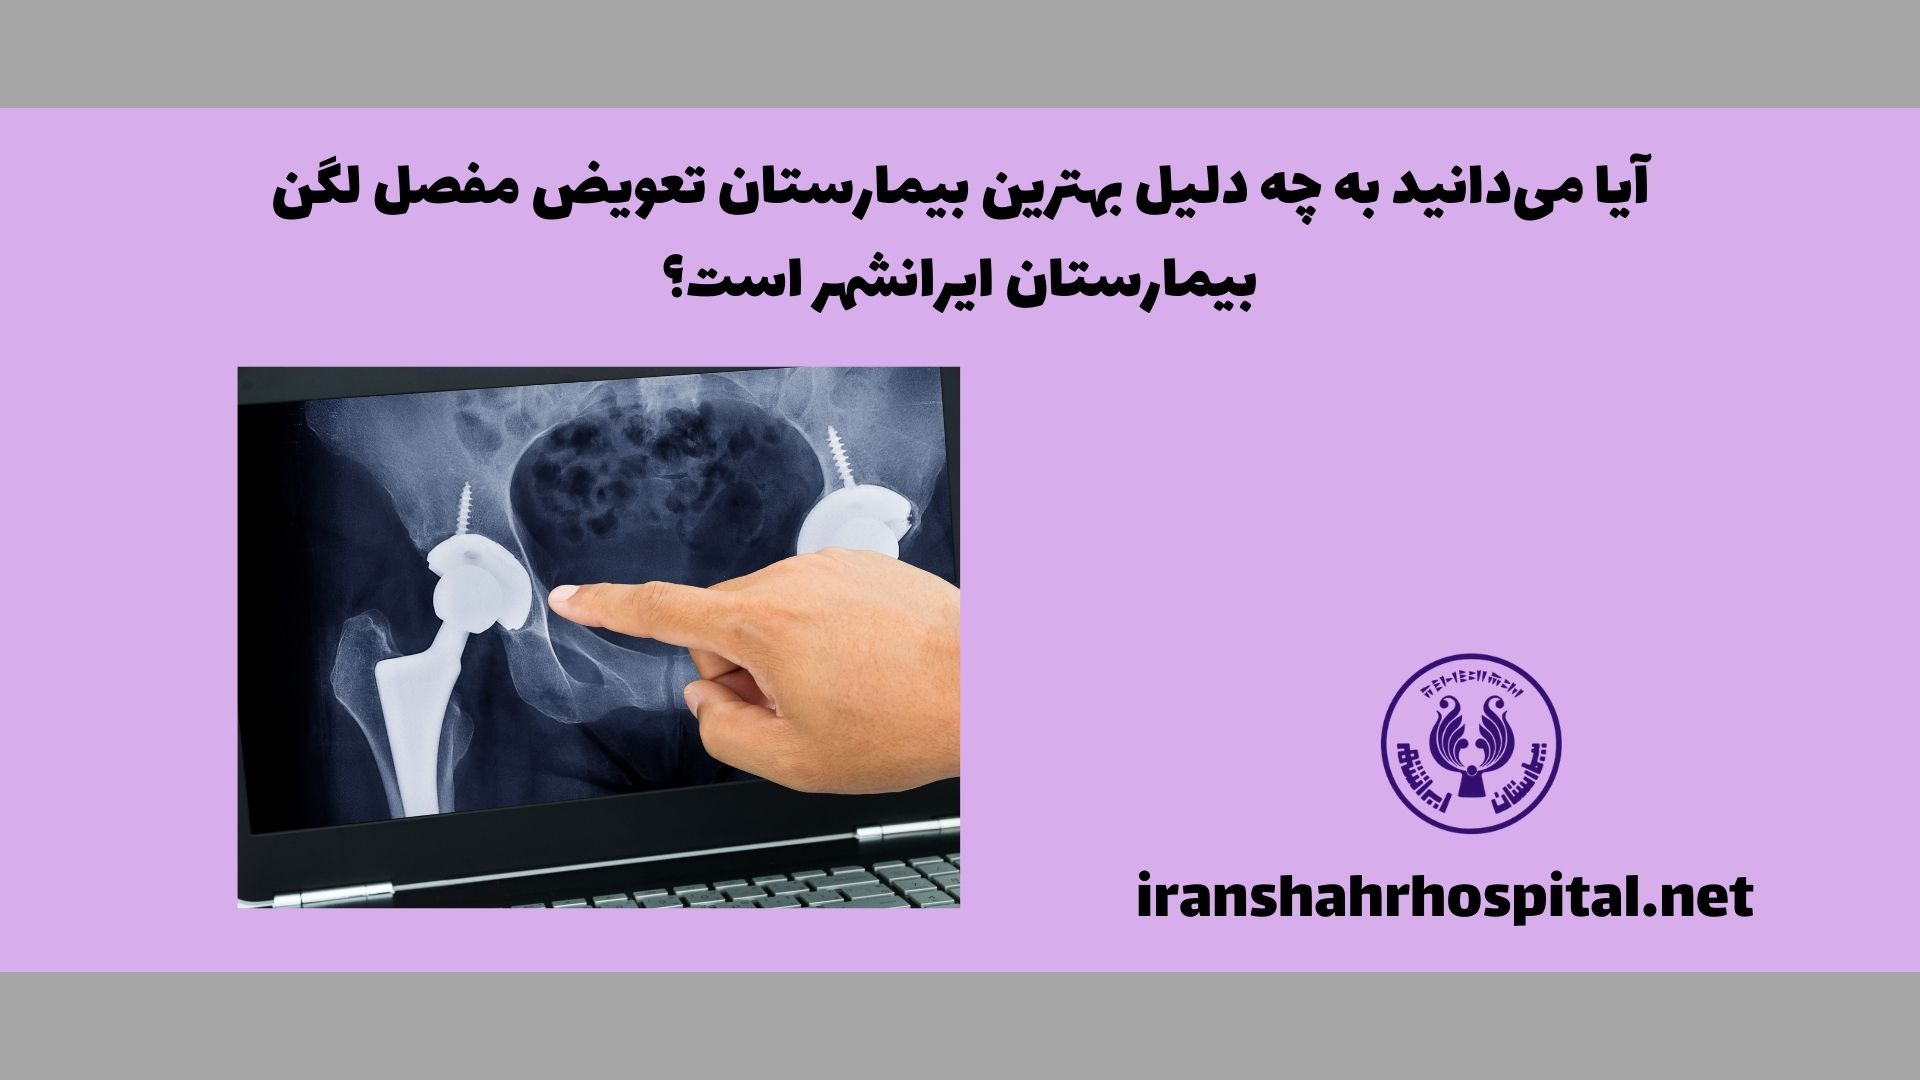 آیا می‌دانید به چه دلیل بیمارستان ایرانشهر، بهترین بیمارستان تعویض مفصل لگن شناخته شده است؟